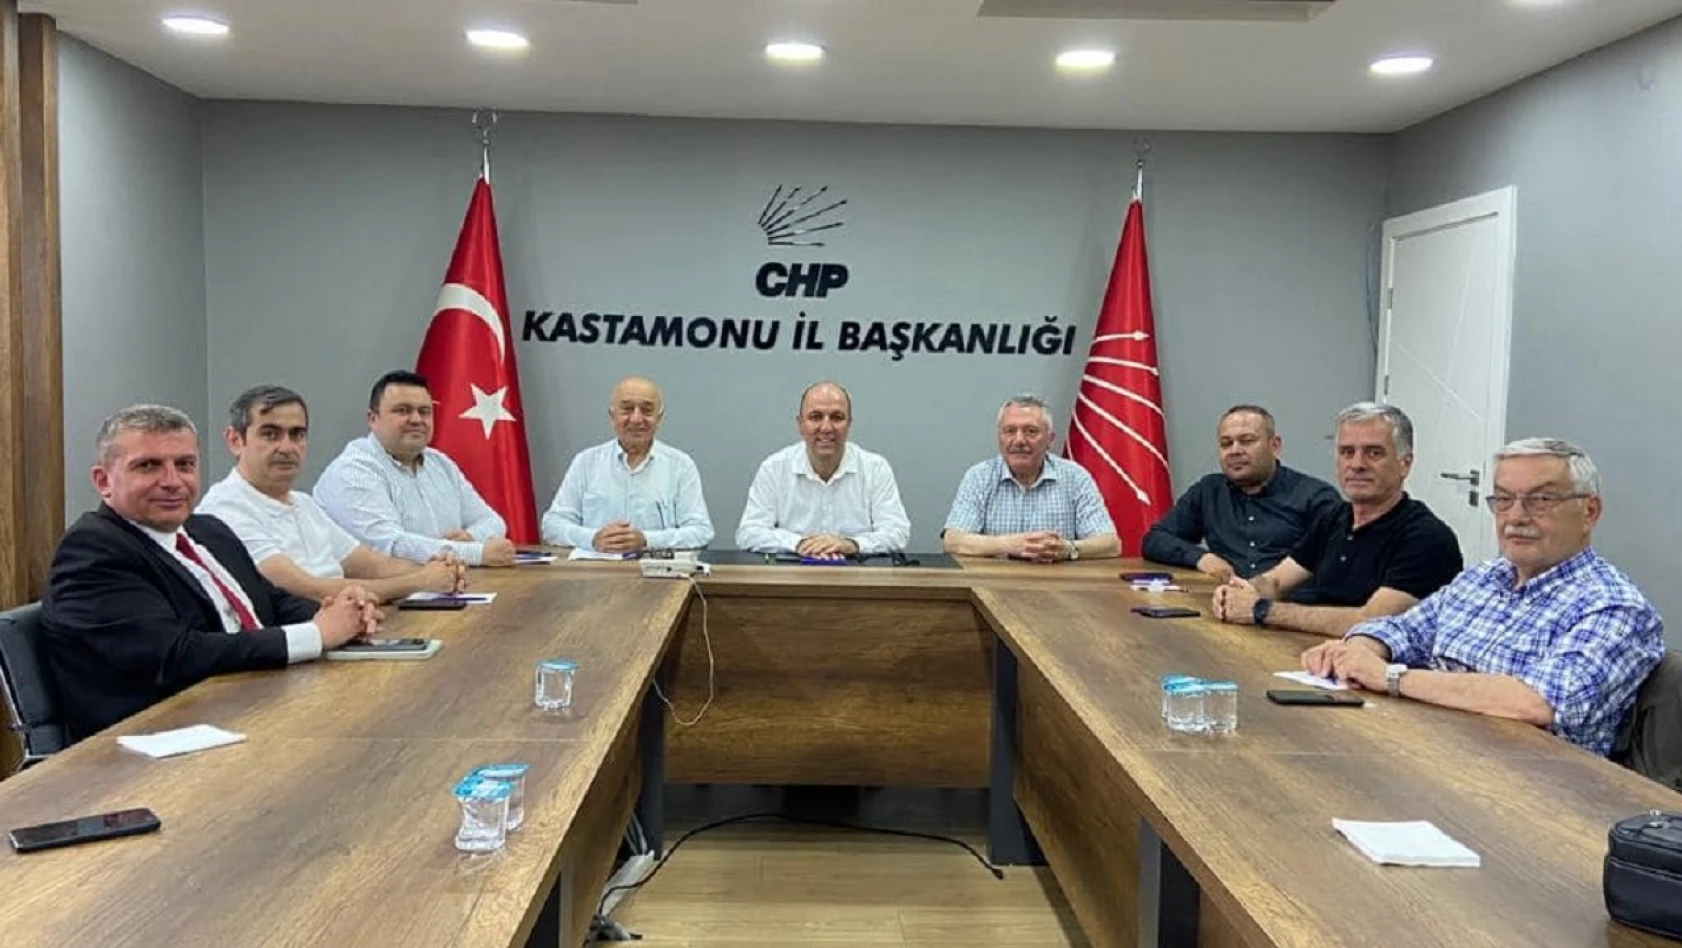 CHP'li başkanlar Kastamonu'da toplandı